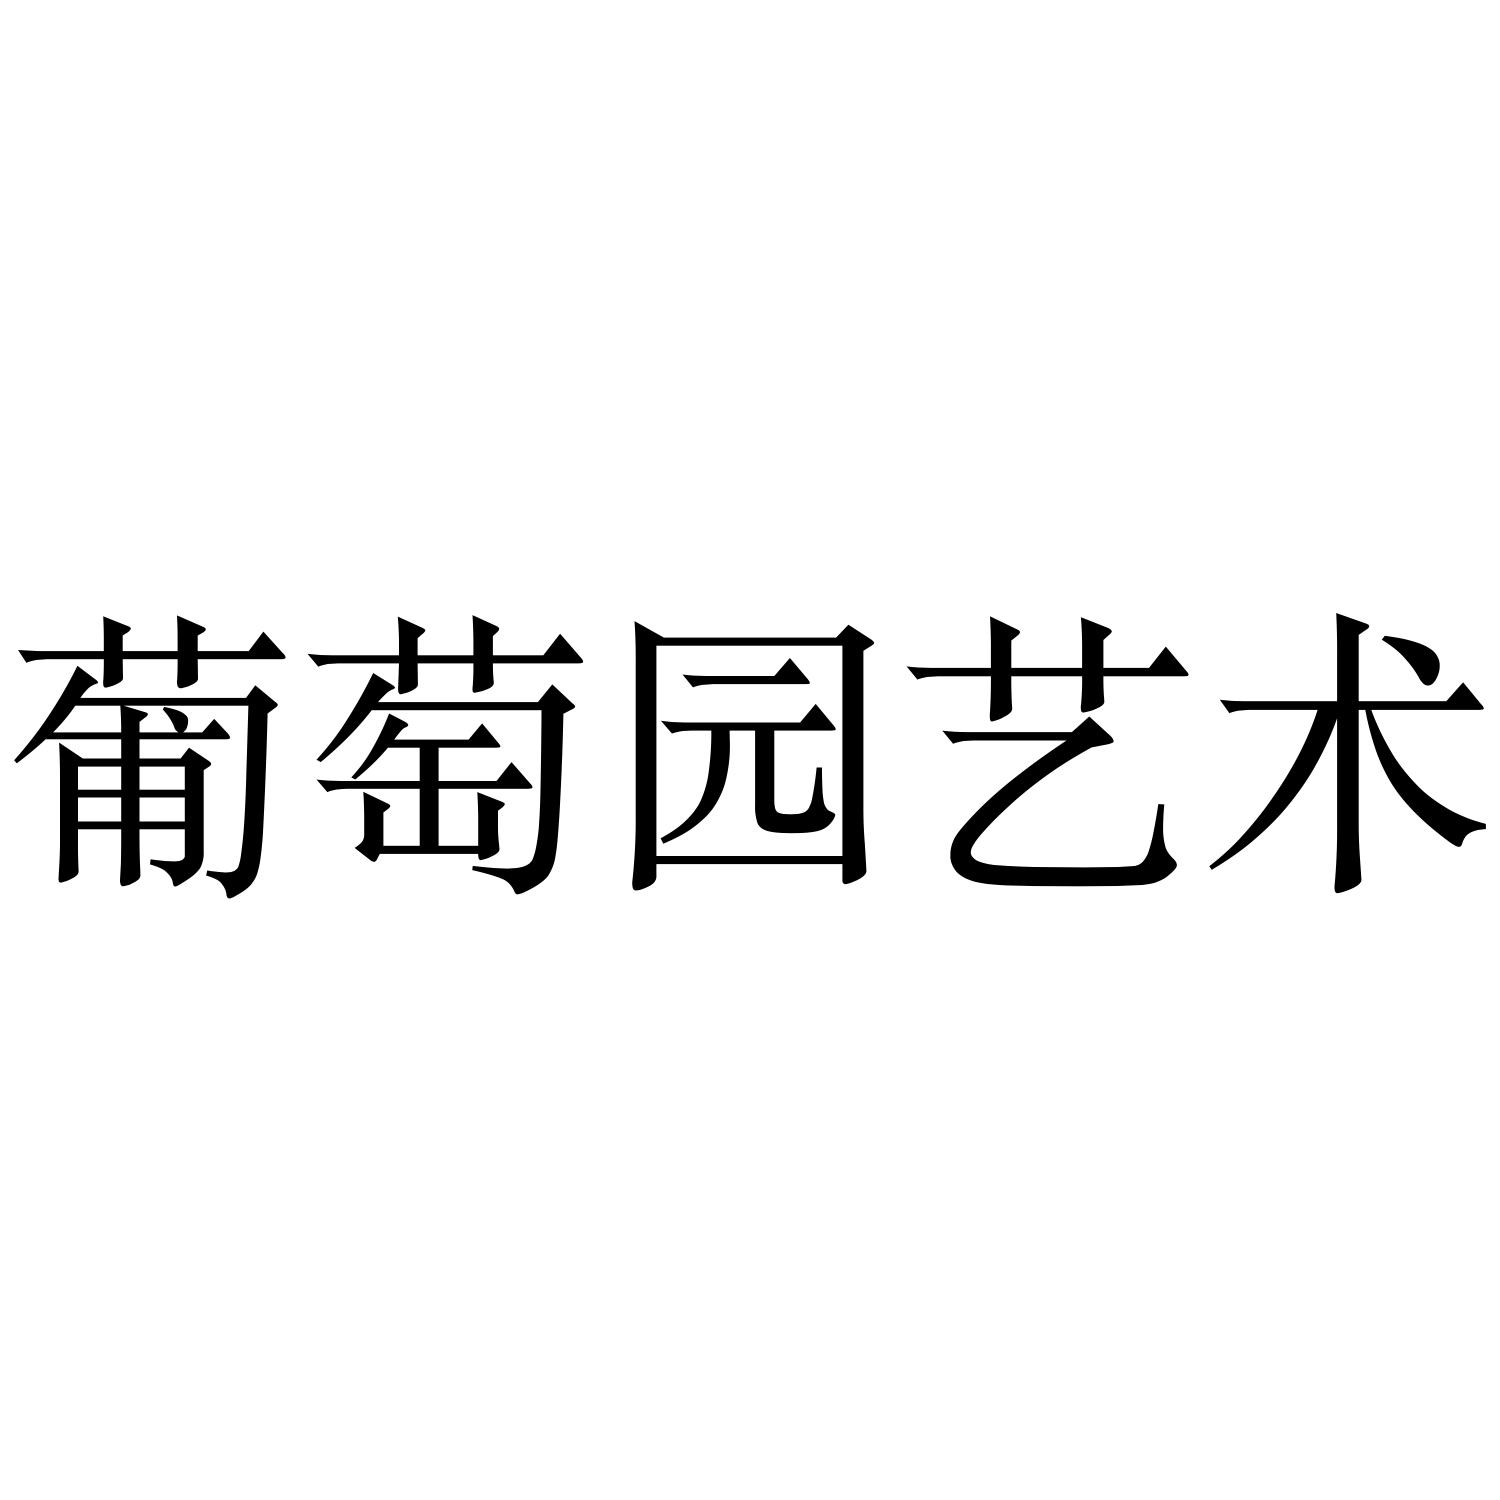 商标文字葡萄园艺术商标注册号 36206518,商标申请人北京诺亚艺舟文化